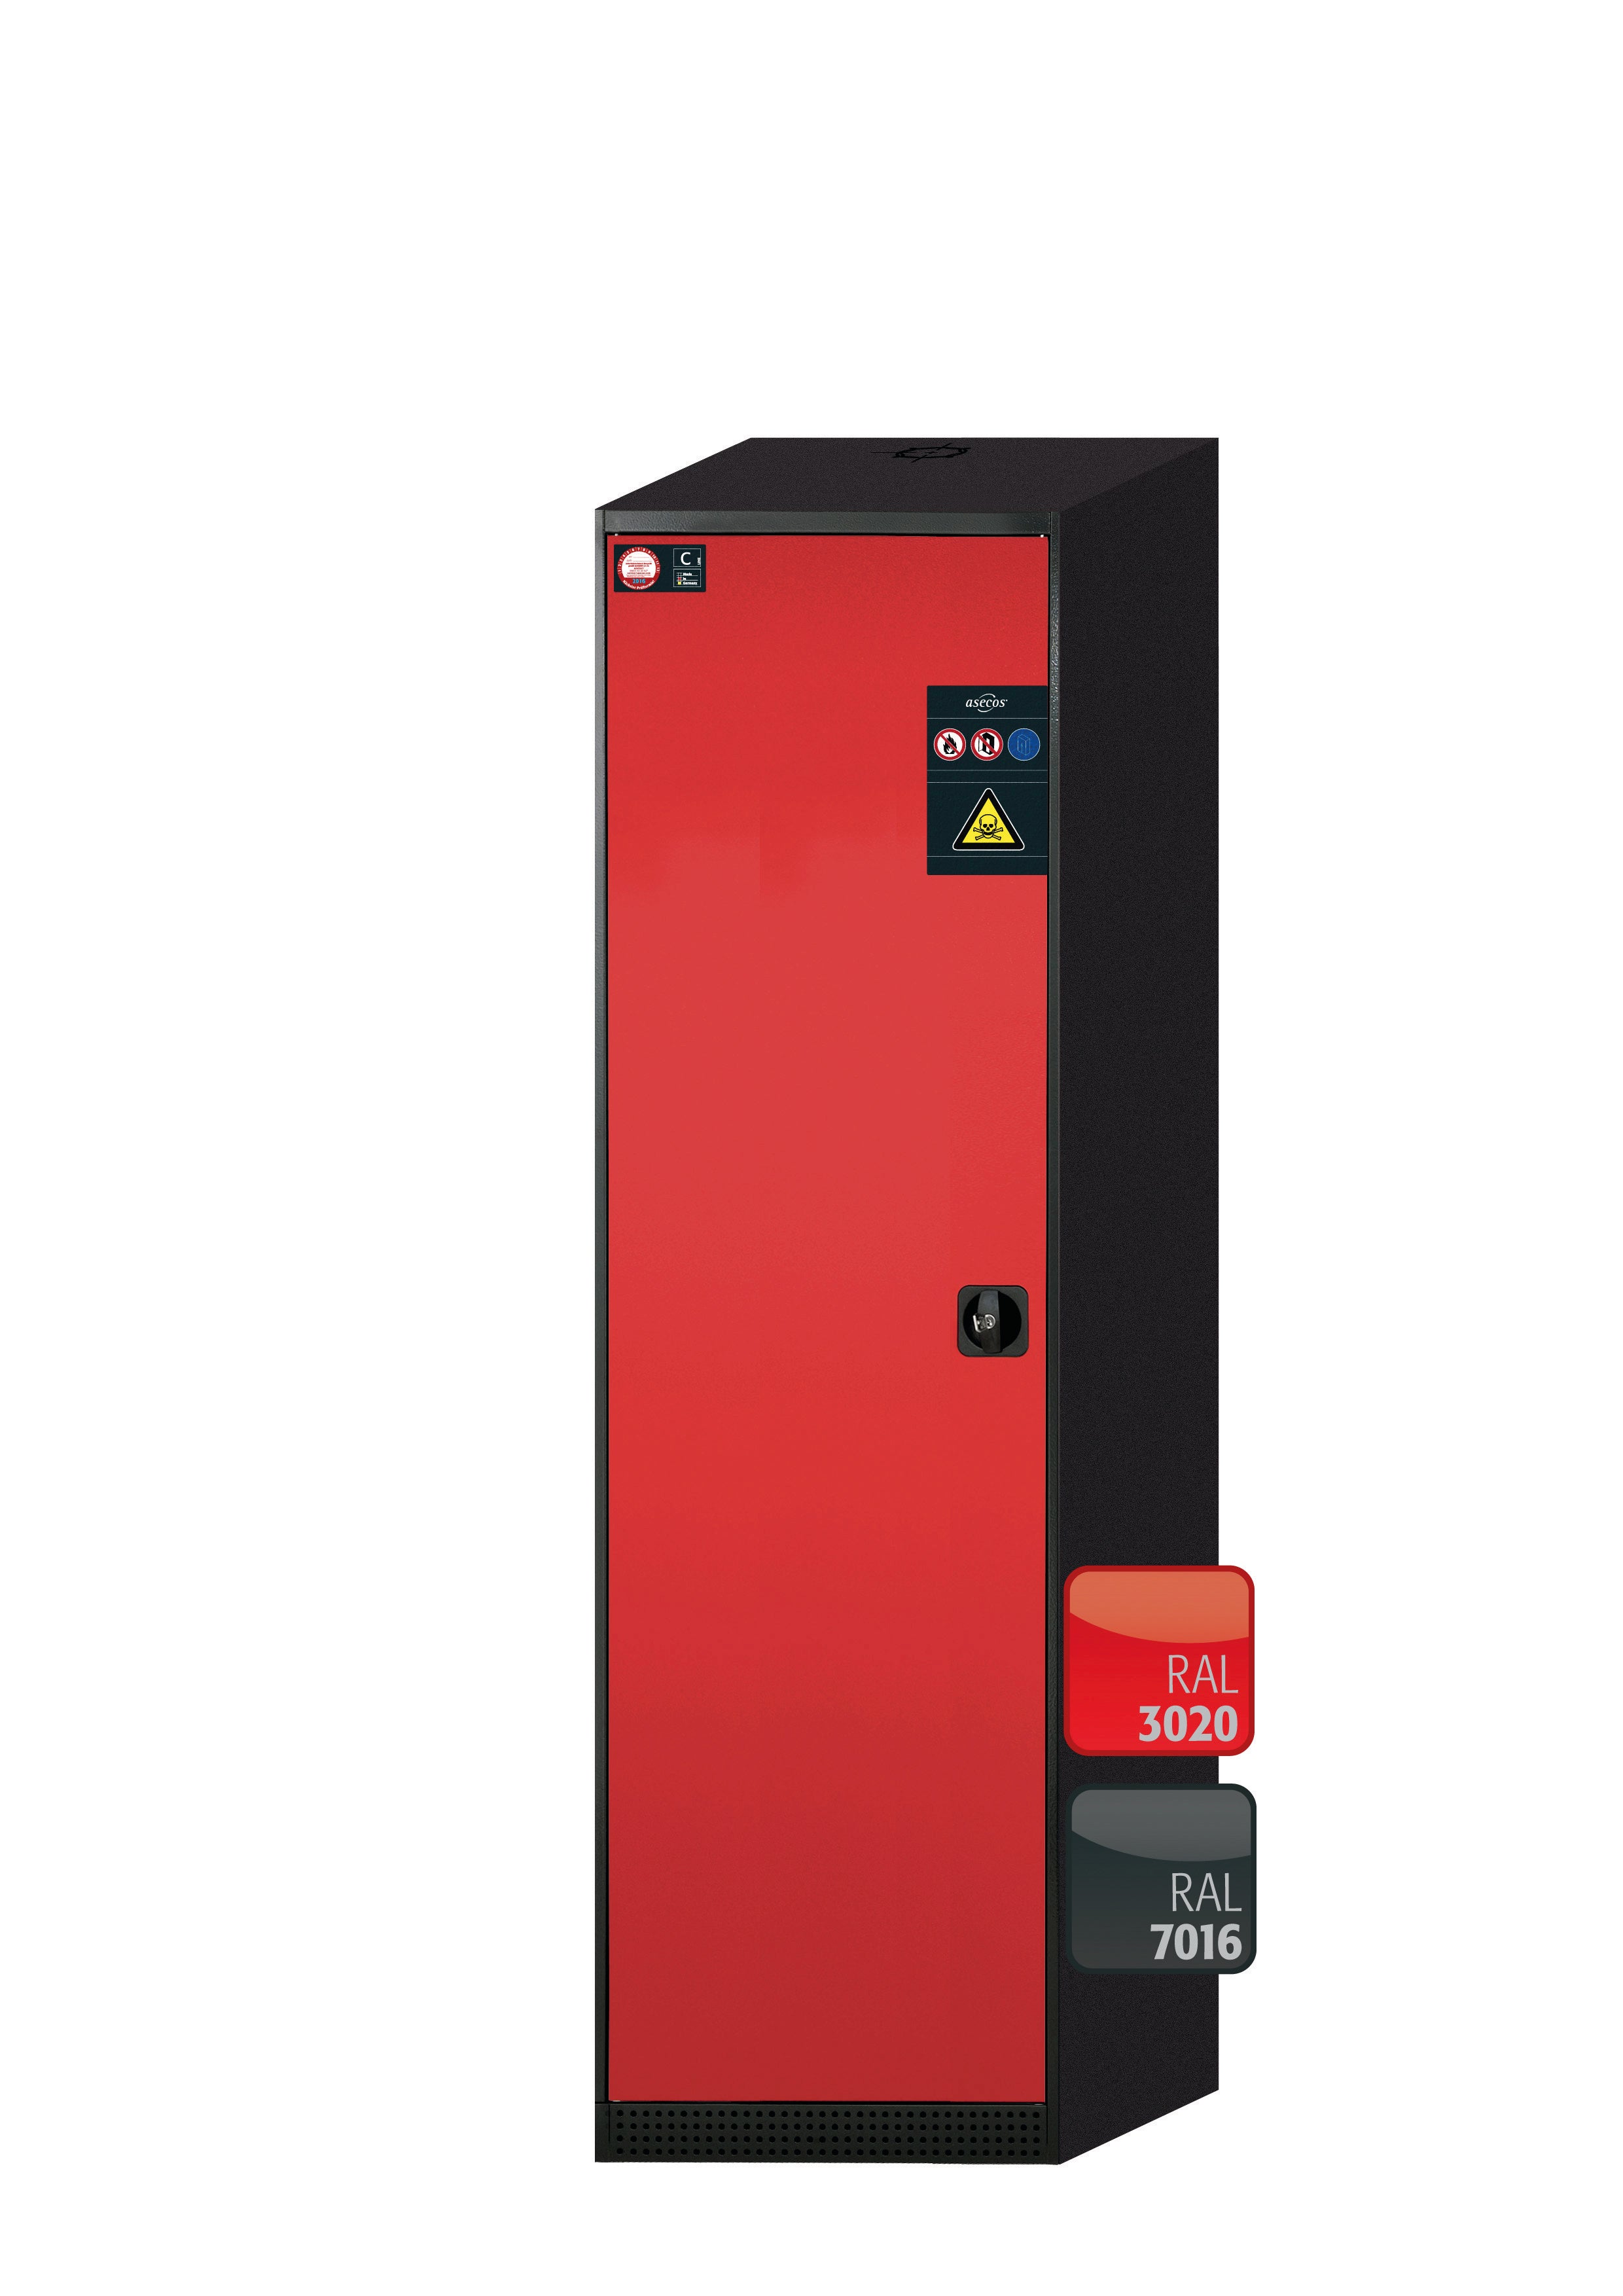 Armoire chimique CS-CLASSIC modèle CS.195.054 en rouge signalisation RAL 3020 avec 3x étagères standard (tôle d'acier)